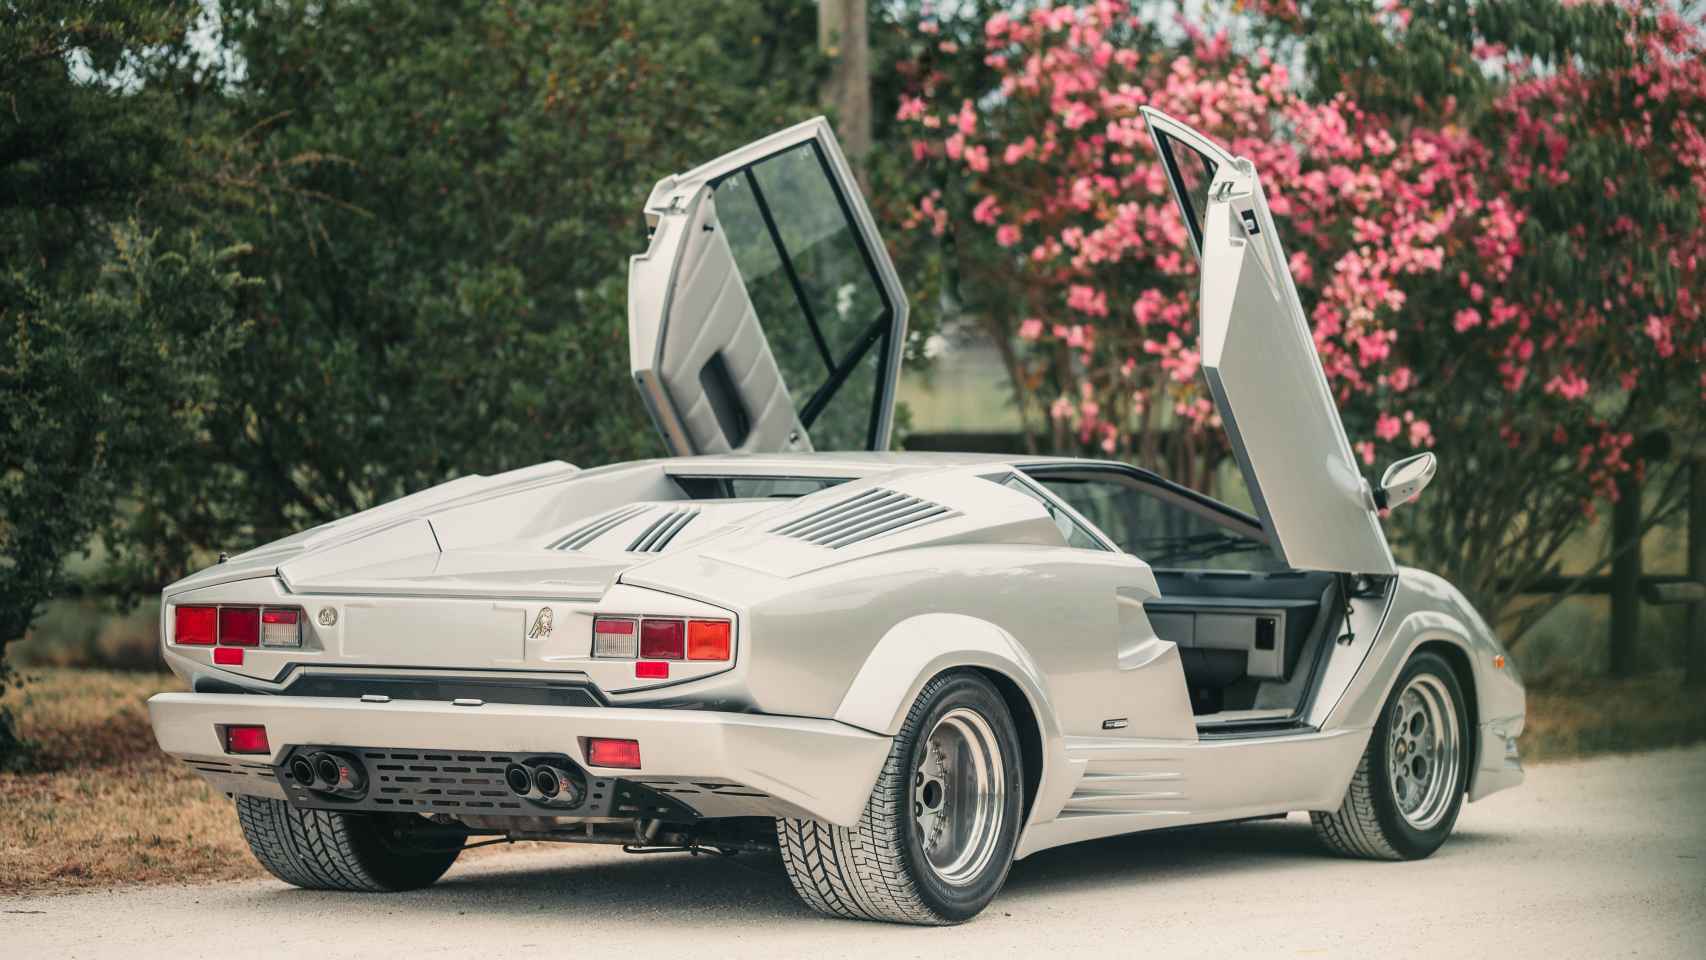 Lamborghini Countach 25 aniversario